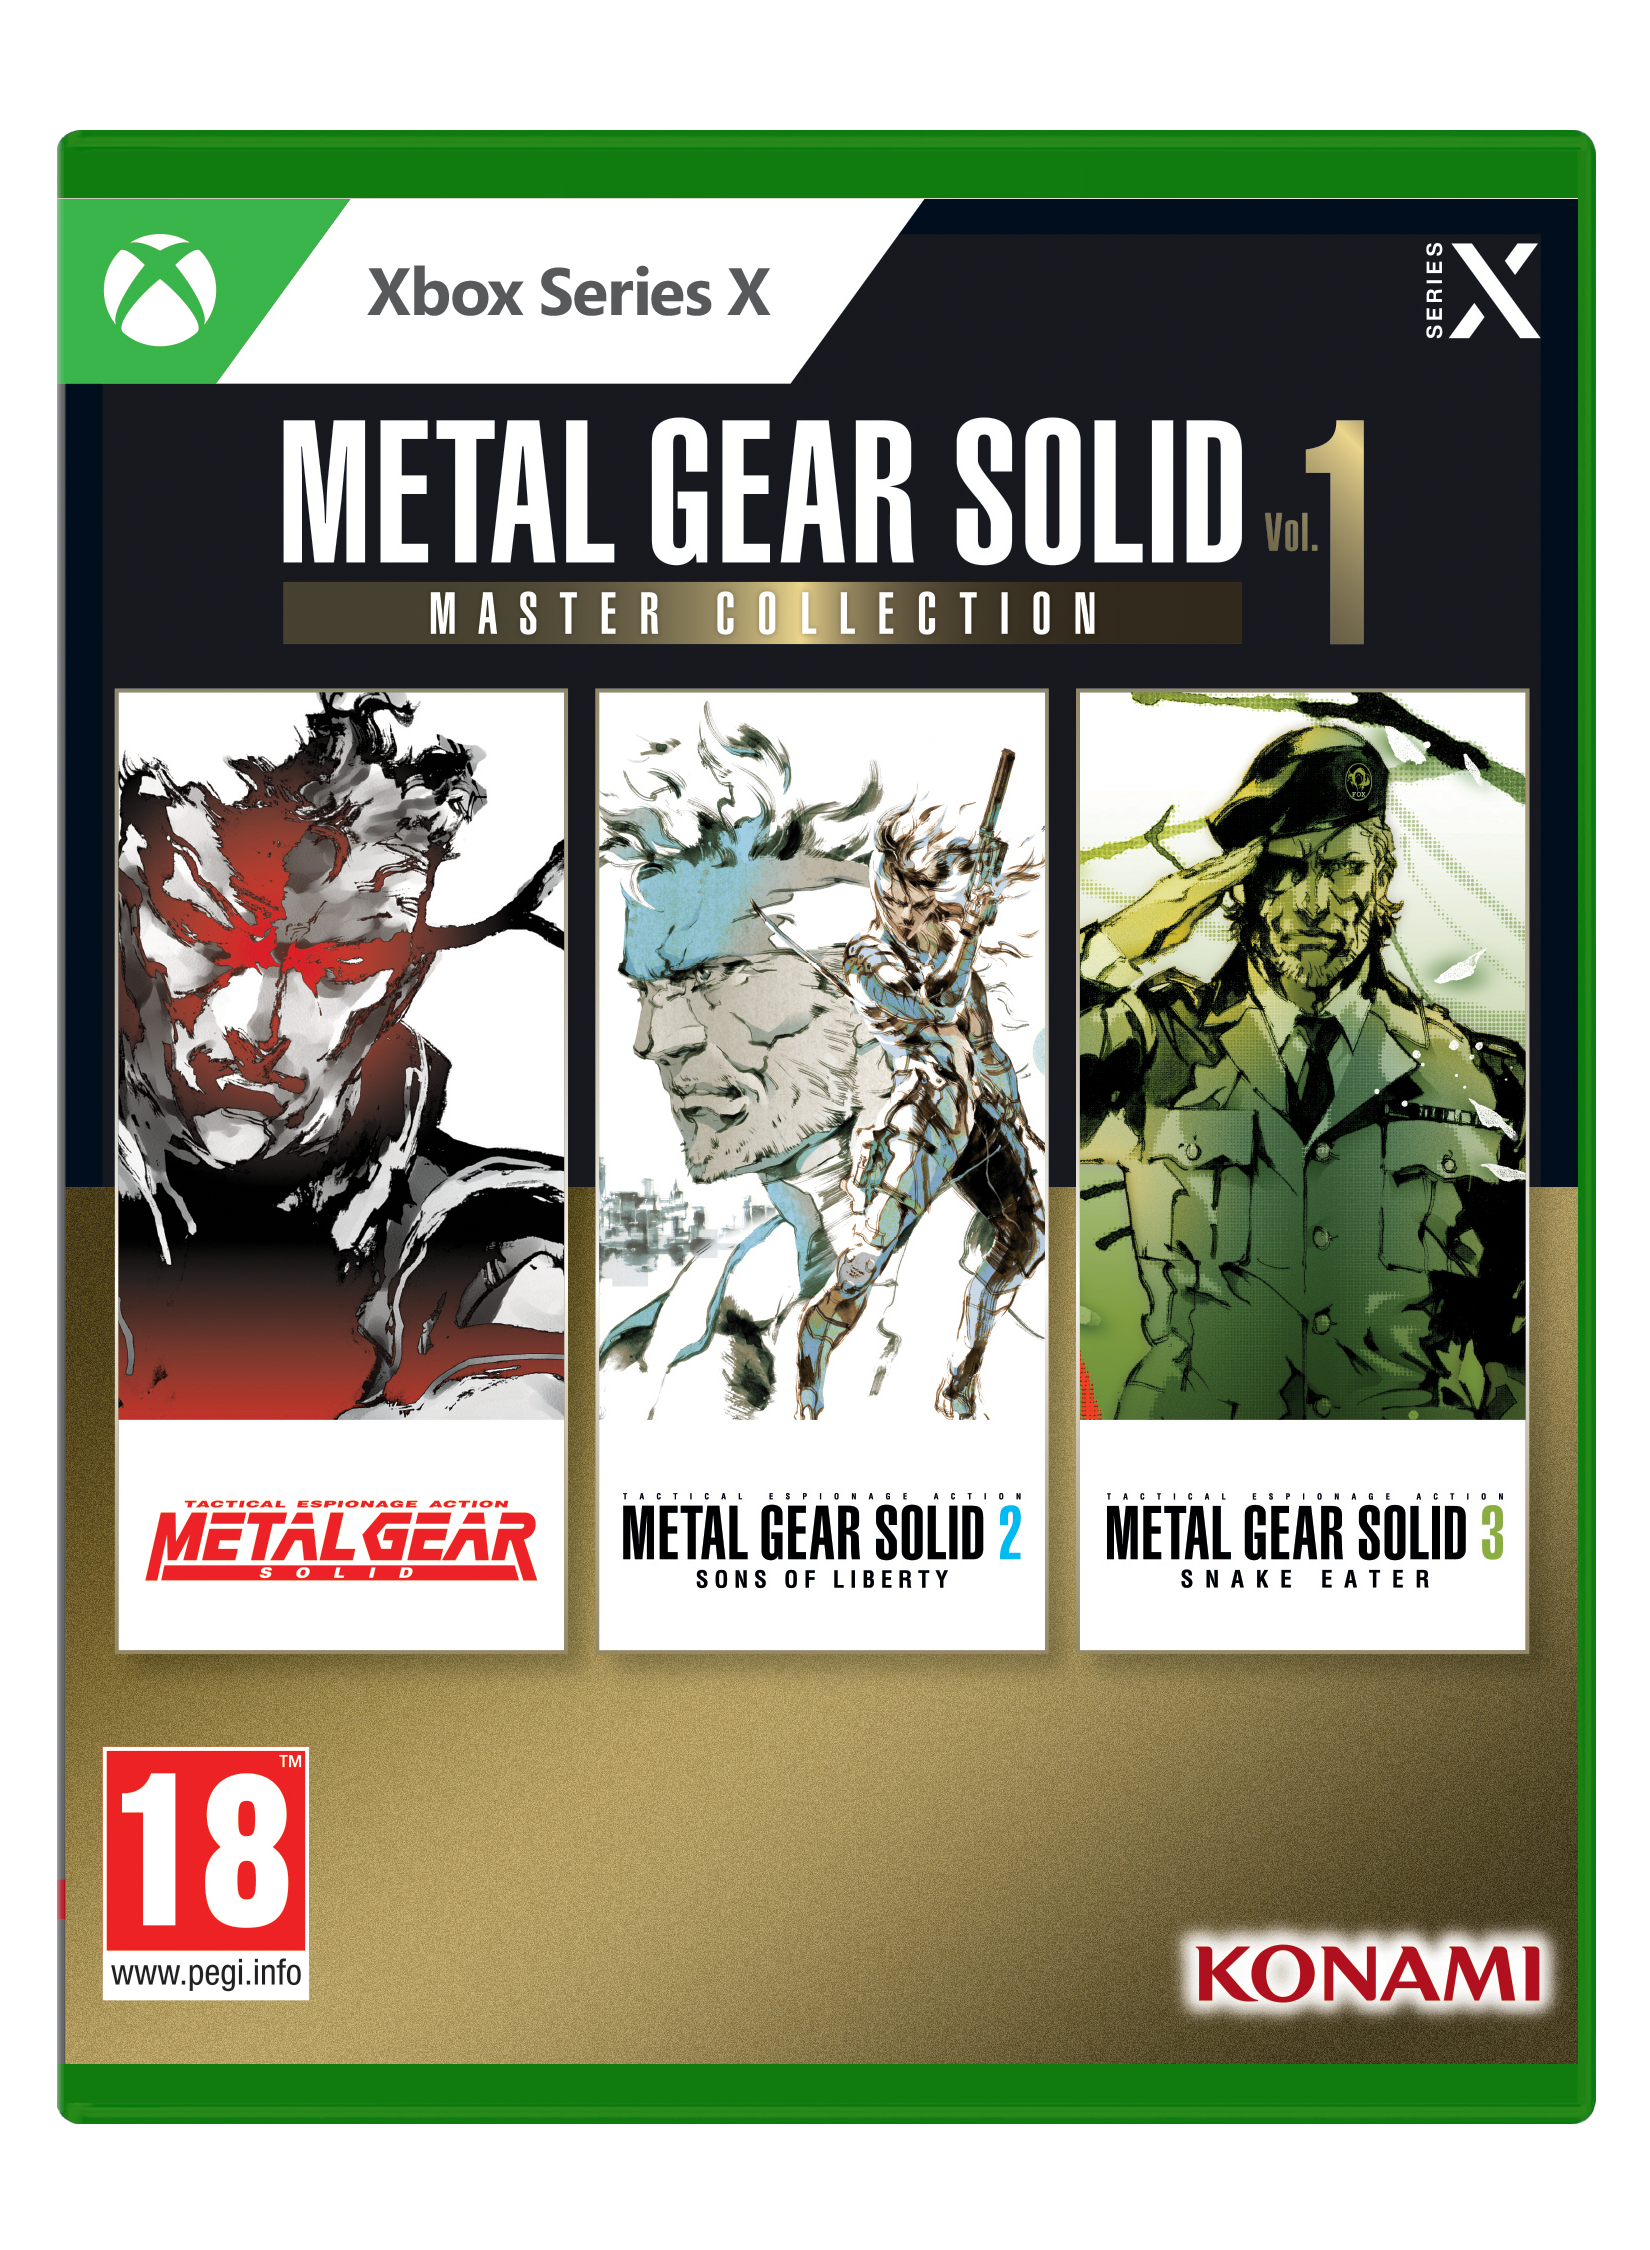 Metal Gear Solid: Master Collection Vol 1 von Konami